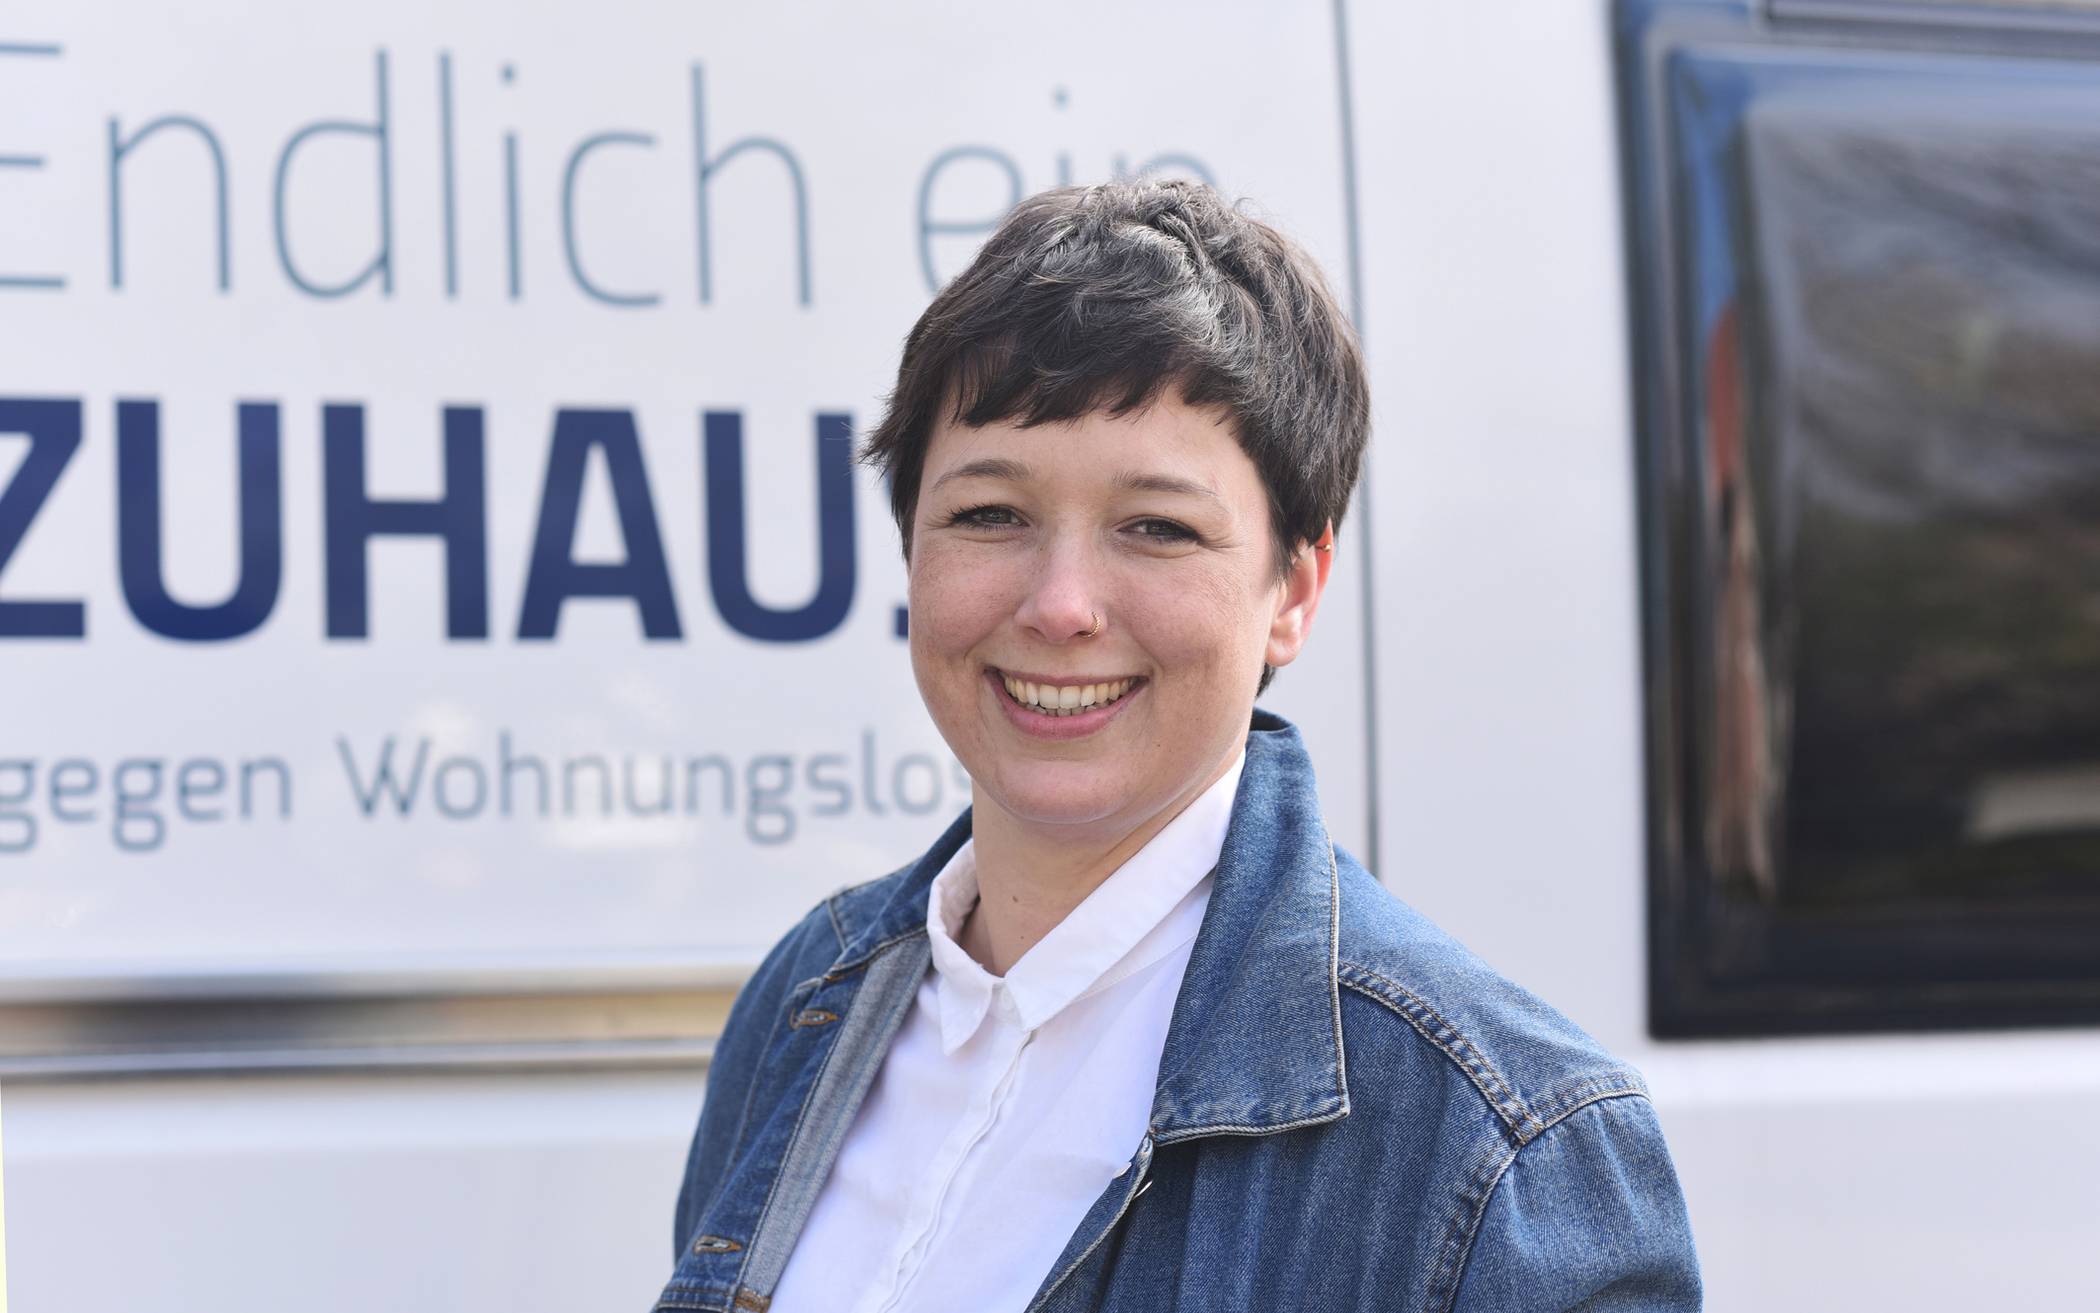  Kristina Teubler, kommissarische Fachbereichsleitung der Wohnungslosenhilfe der Caritas im Rhein-Kreis Neuss. 